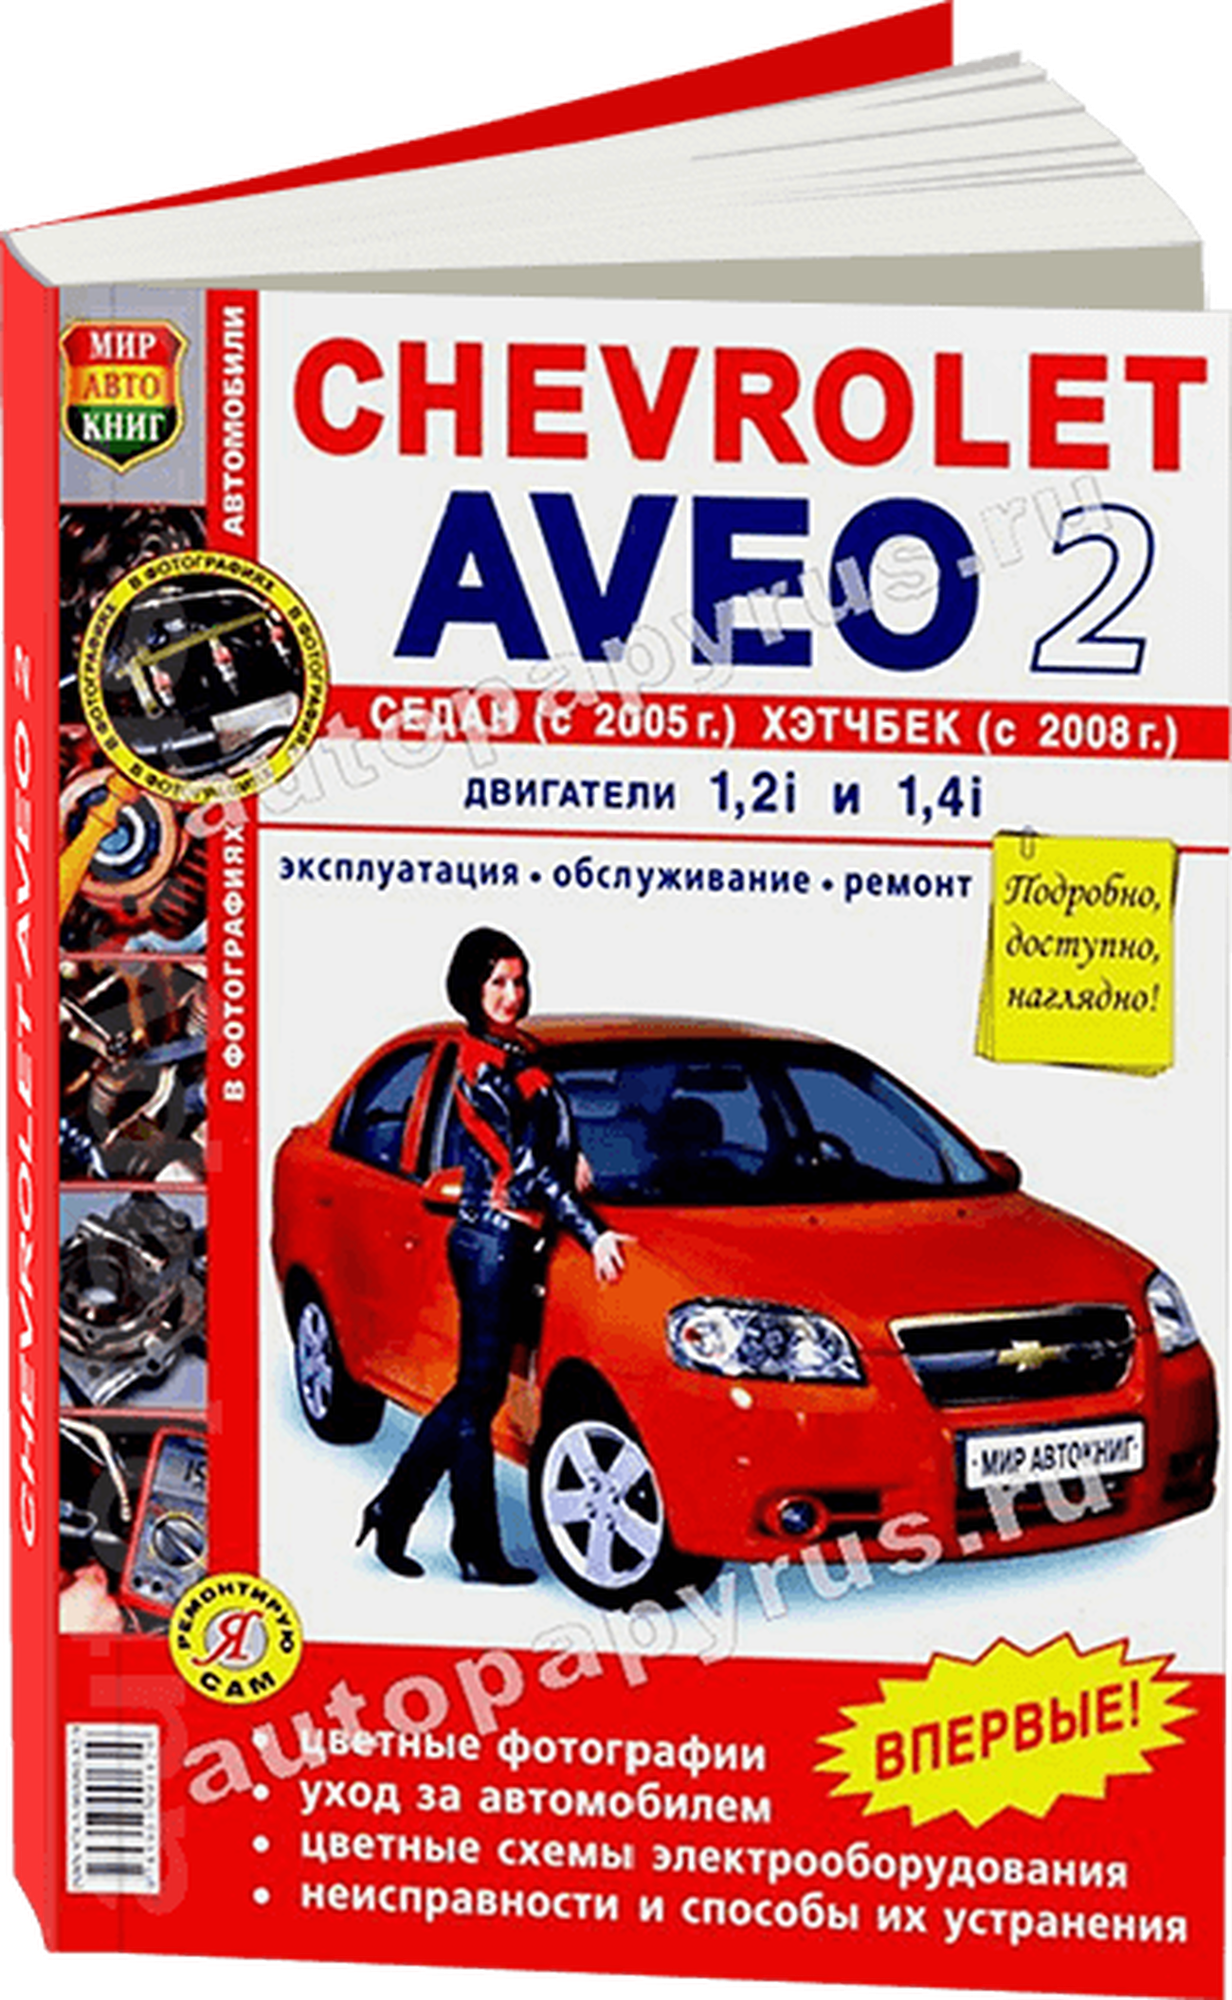 Автокнига: руководство / инструкция по ремонту и эксплуатации CHEVROLET AVEO II (шевроле авео 2) бензин с 2005 года выпуска, 978-5-903091-82-9, издательство Мир Автокниг